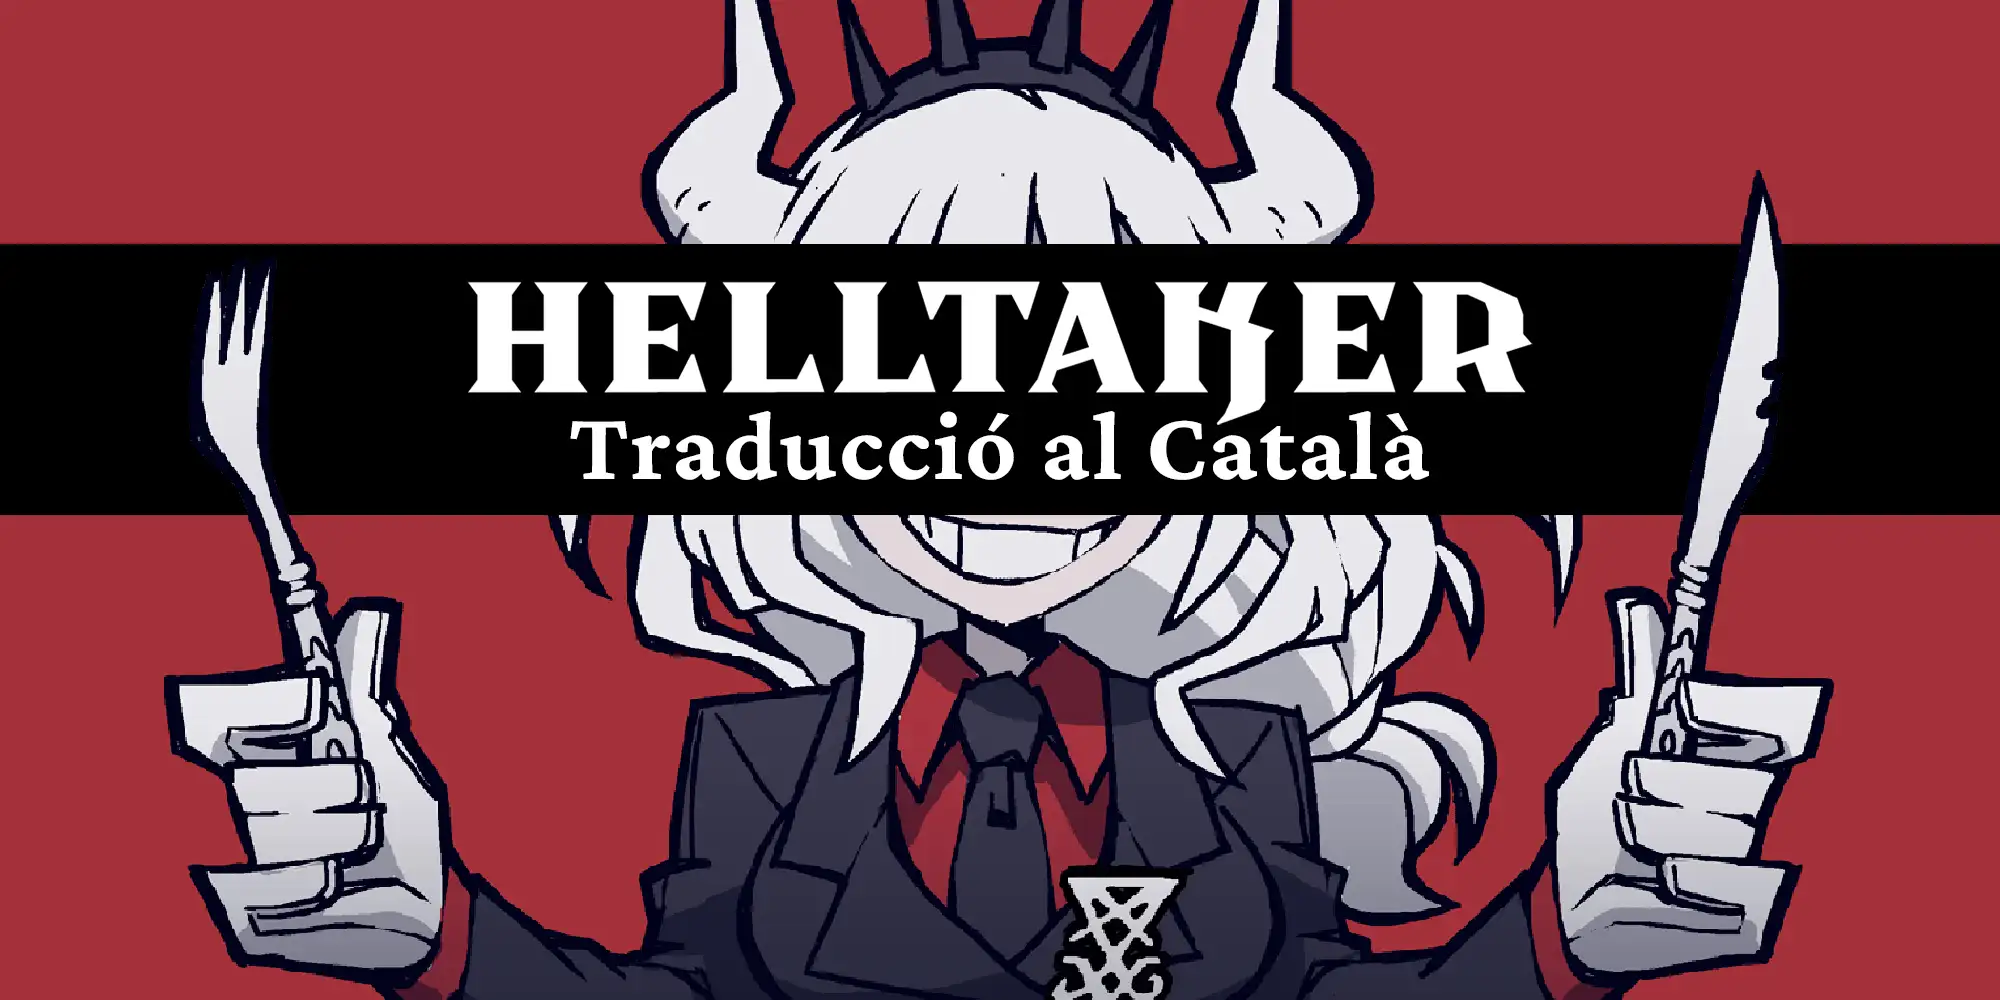 Helltaker s’estrena en català gràcies a Projecte Ce Trencada